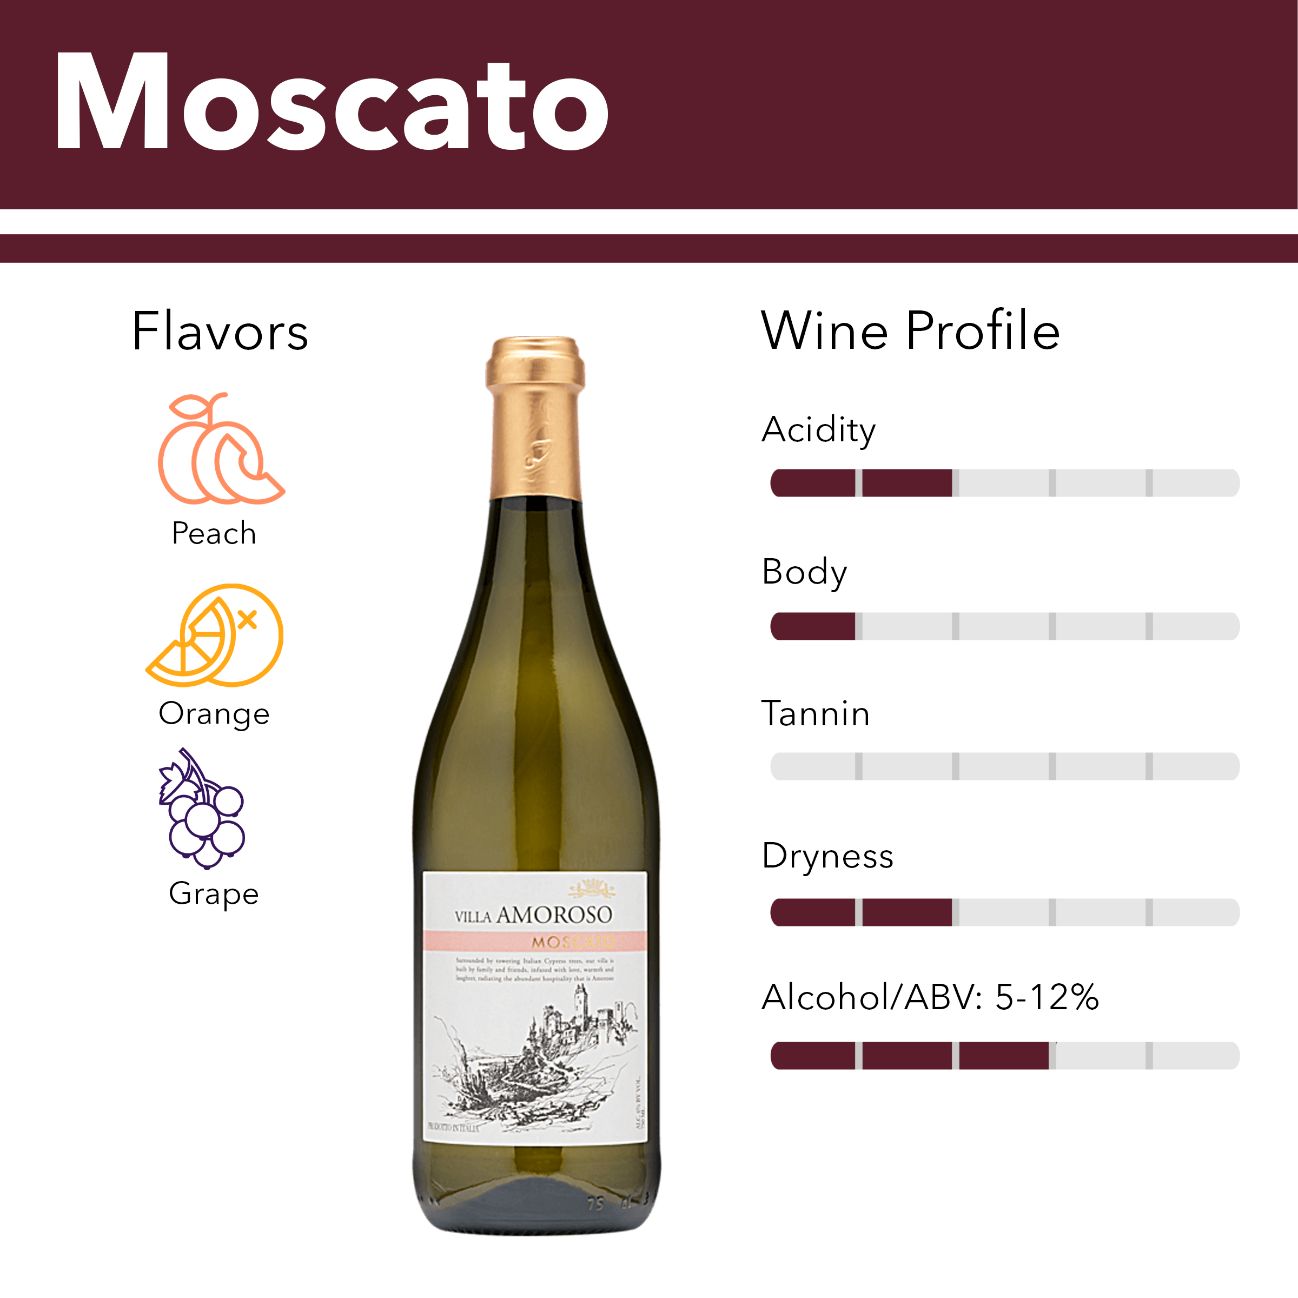 Moscato wine flavor profile.